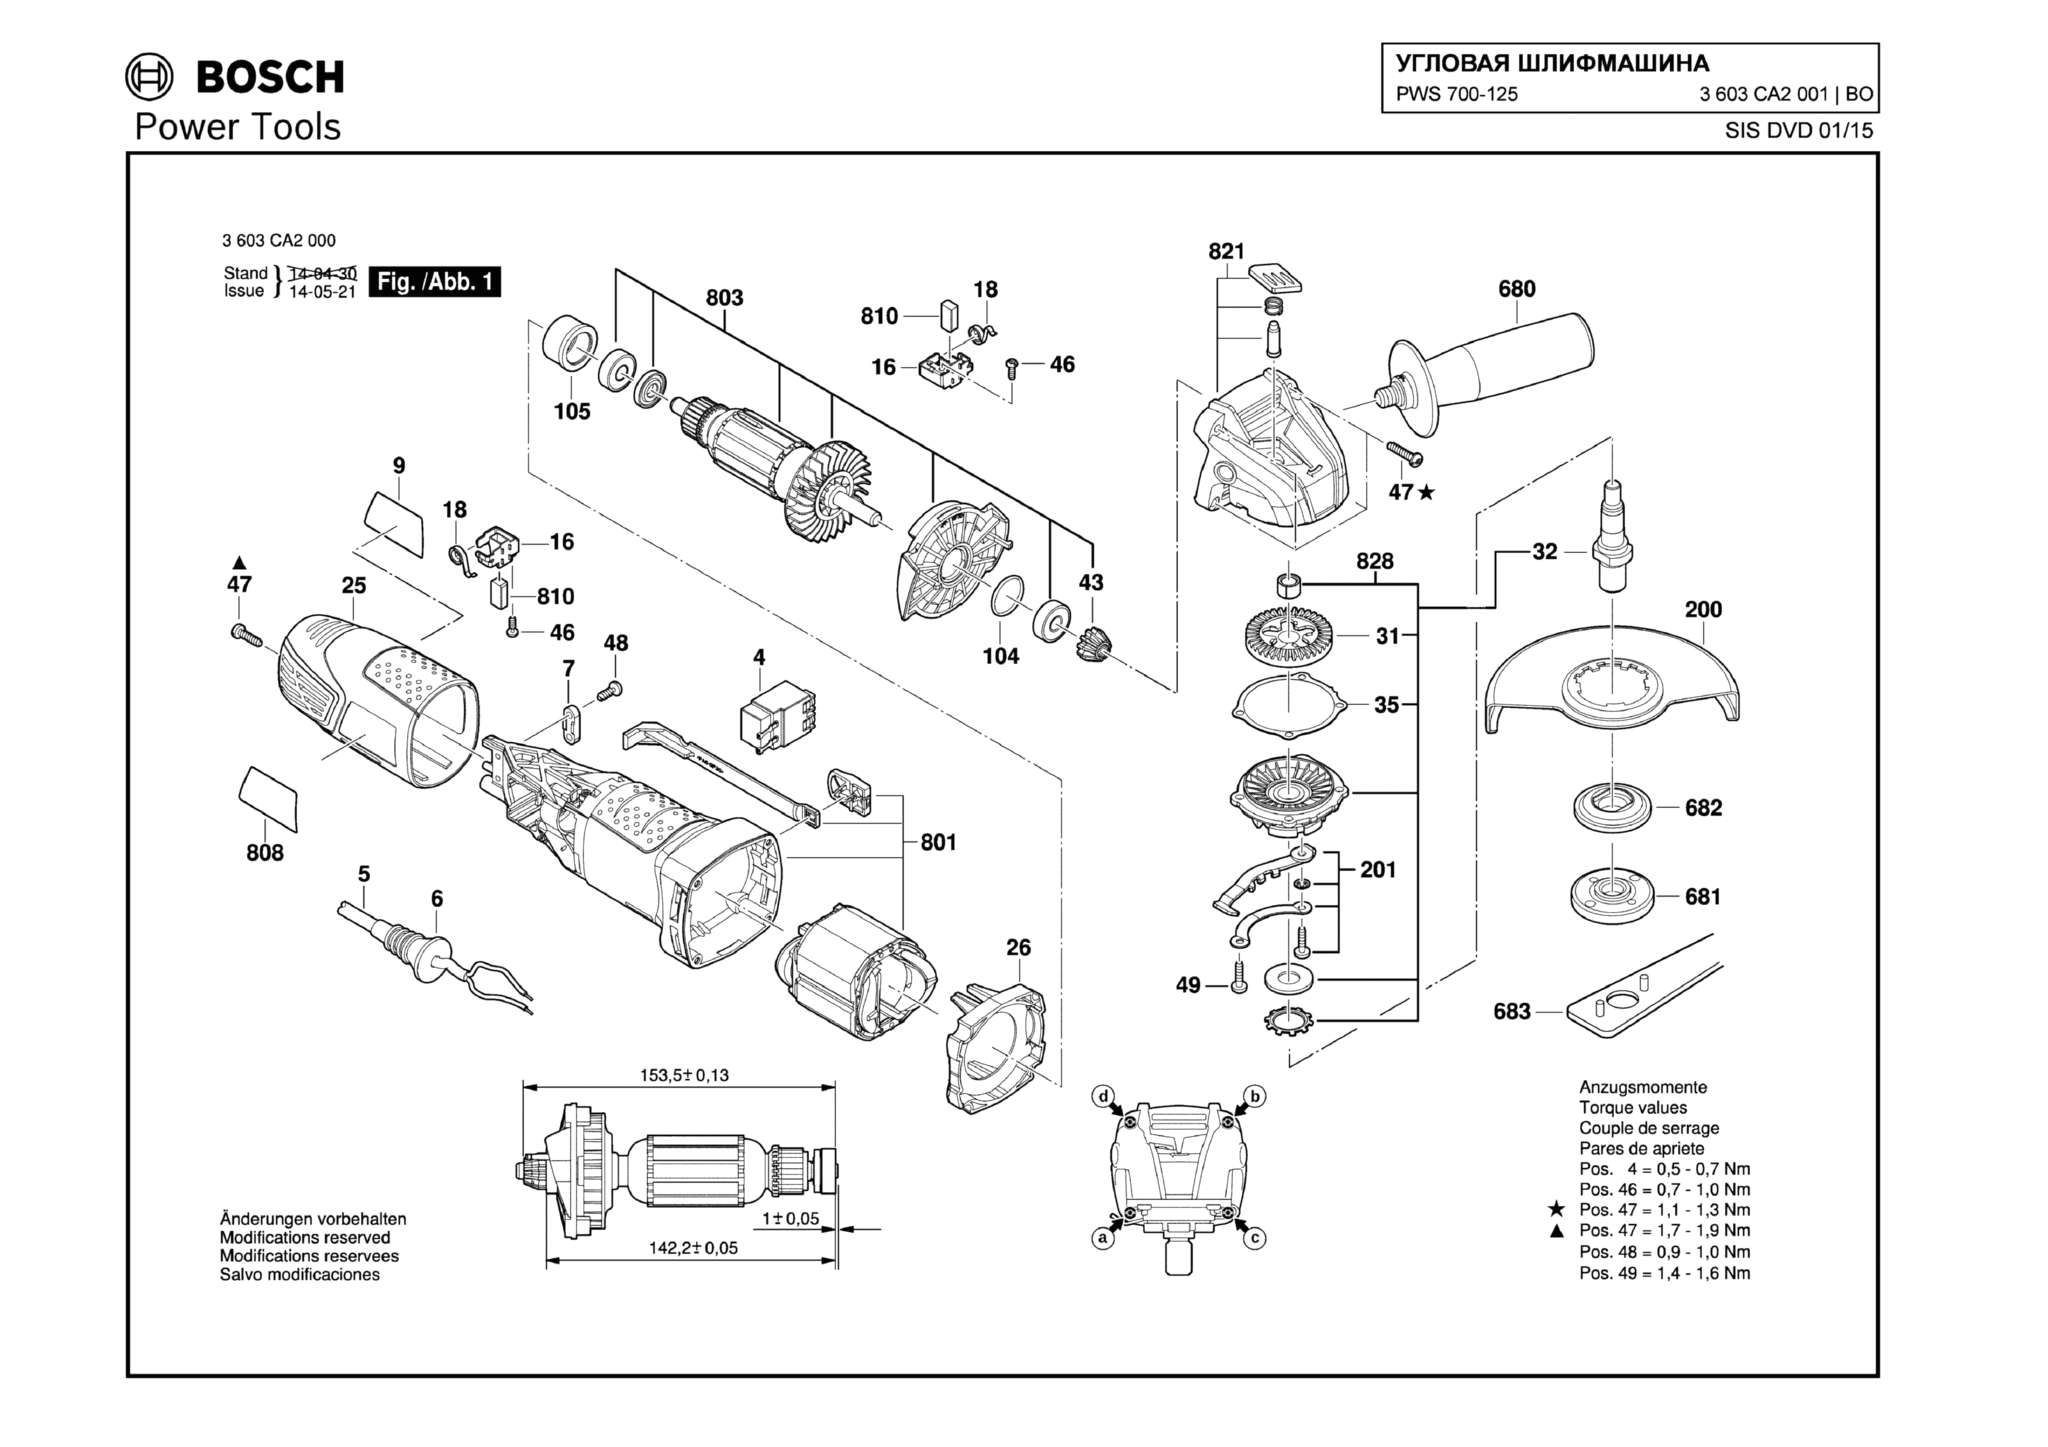 Запчасти, схема и деталировка Bosch PWS 700-125 (ТИП 3603CA2001)